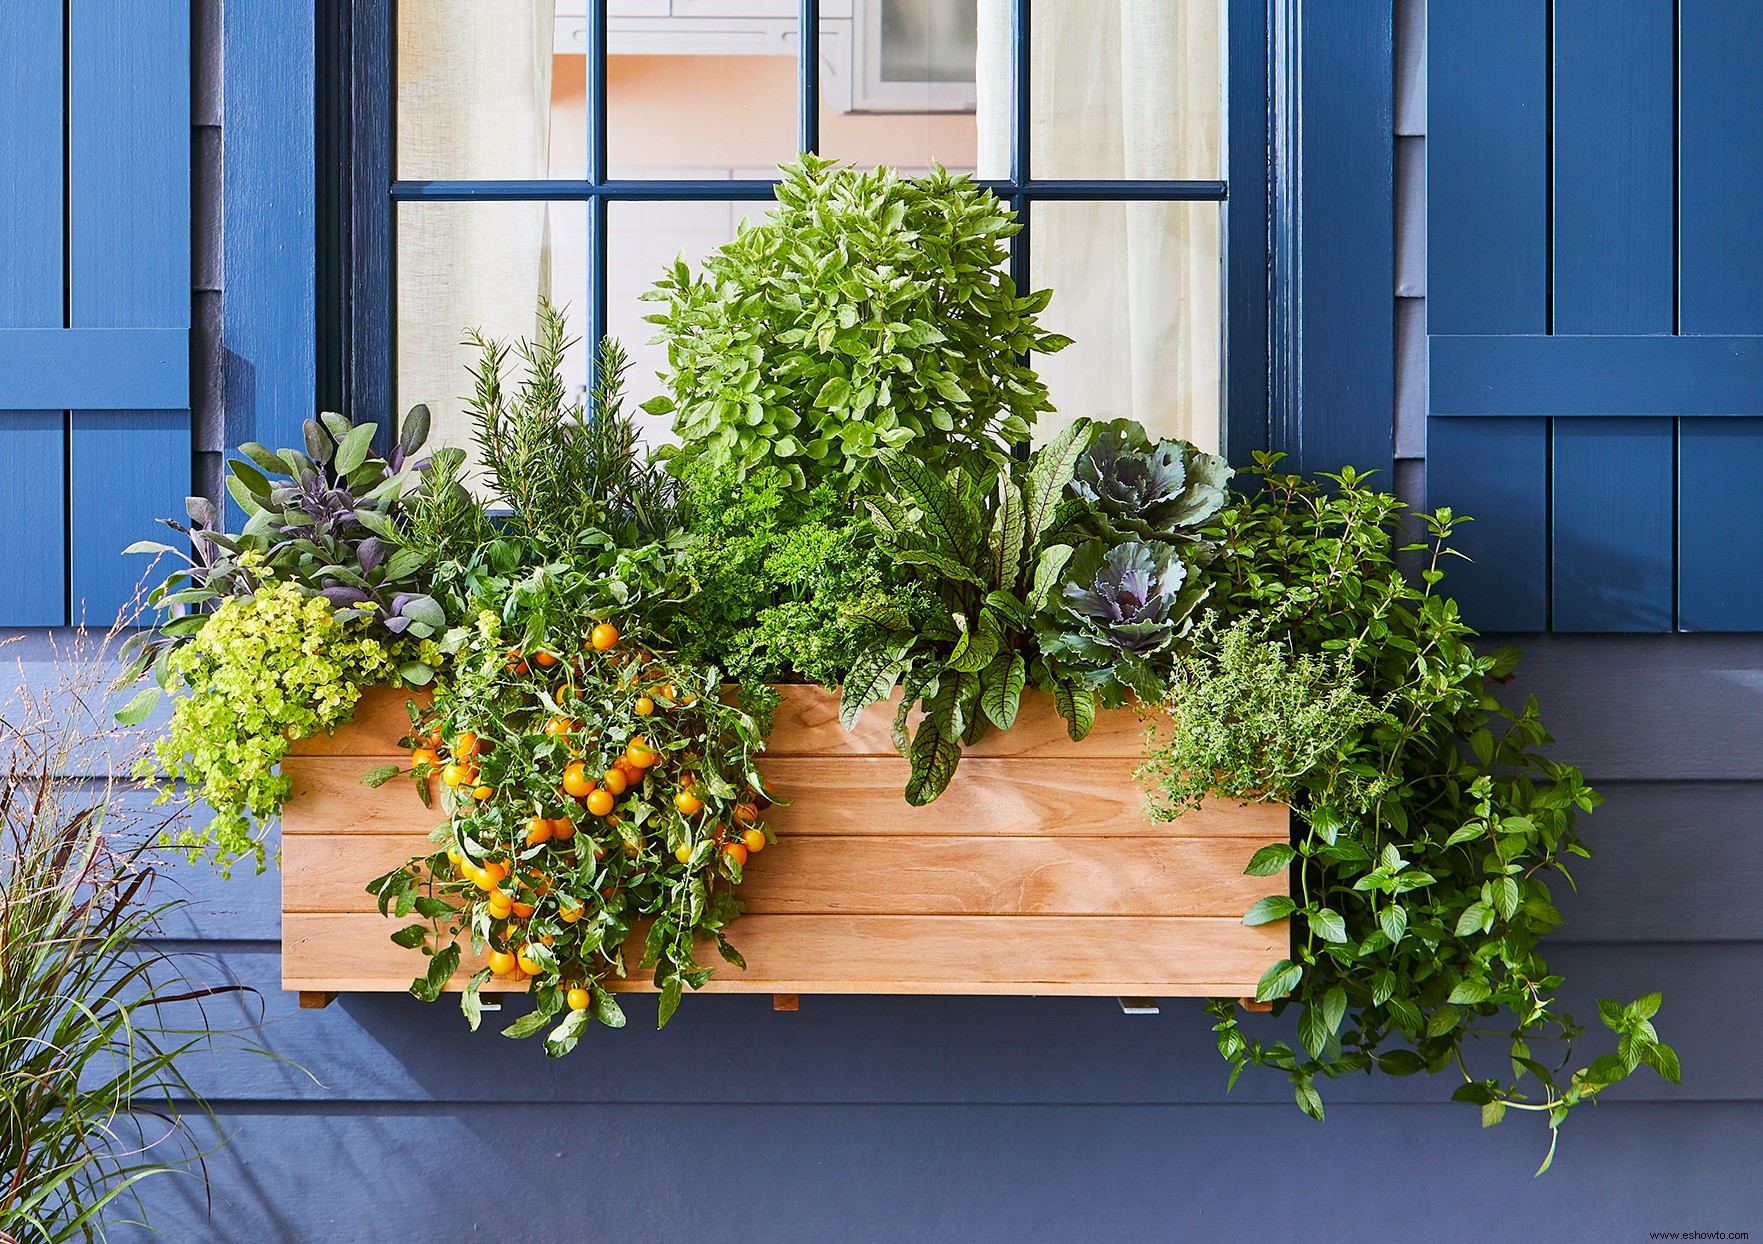 Este plan de ventana le proporcionará verduras y hierbas frescas este verano 